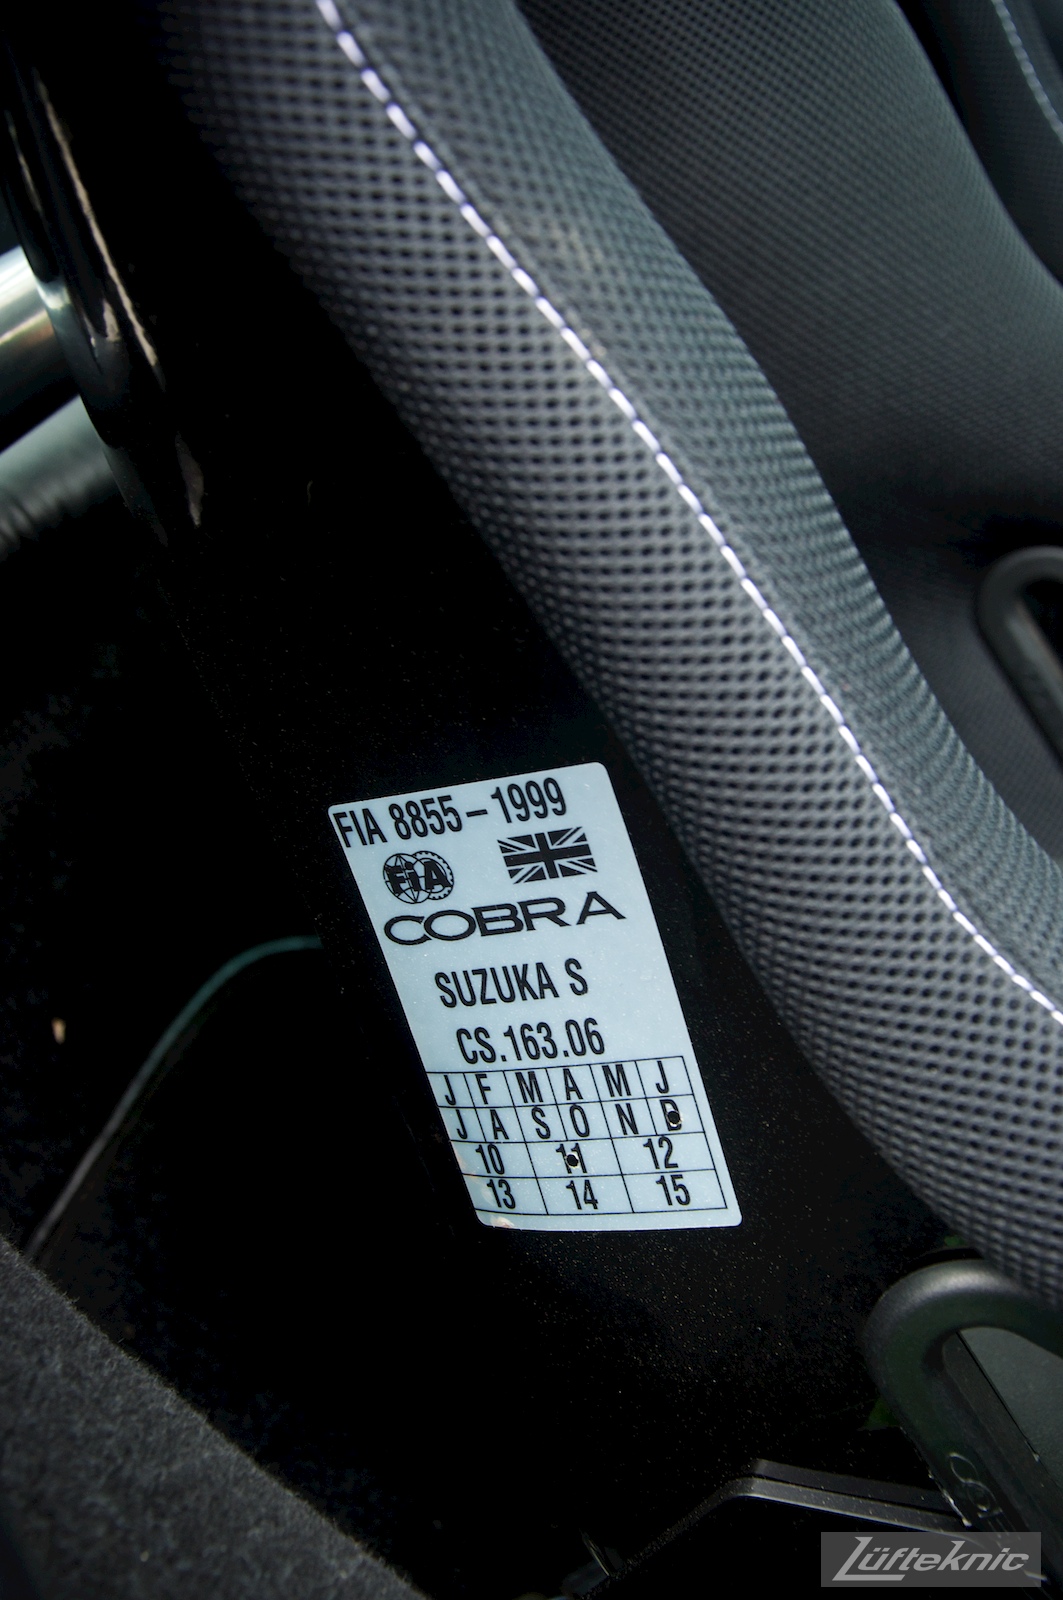 Cobra seat FIA label picture in a 993 Turbo,